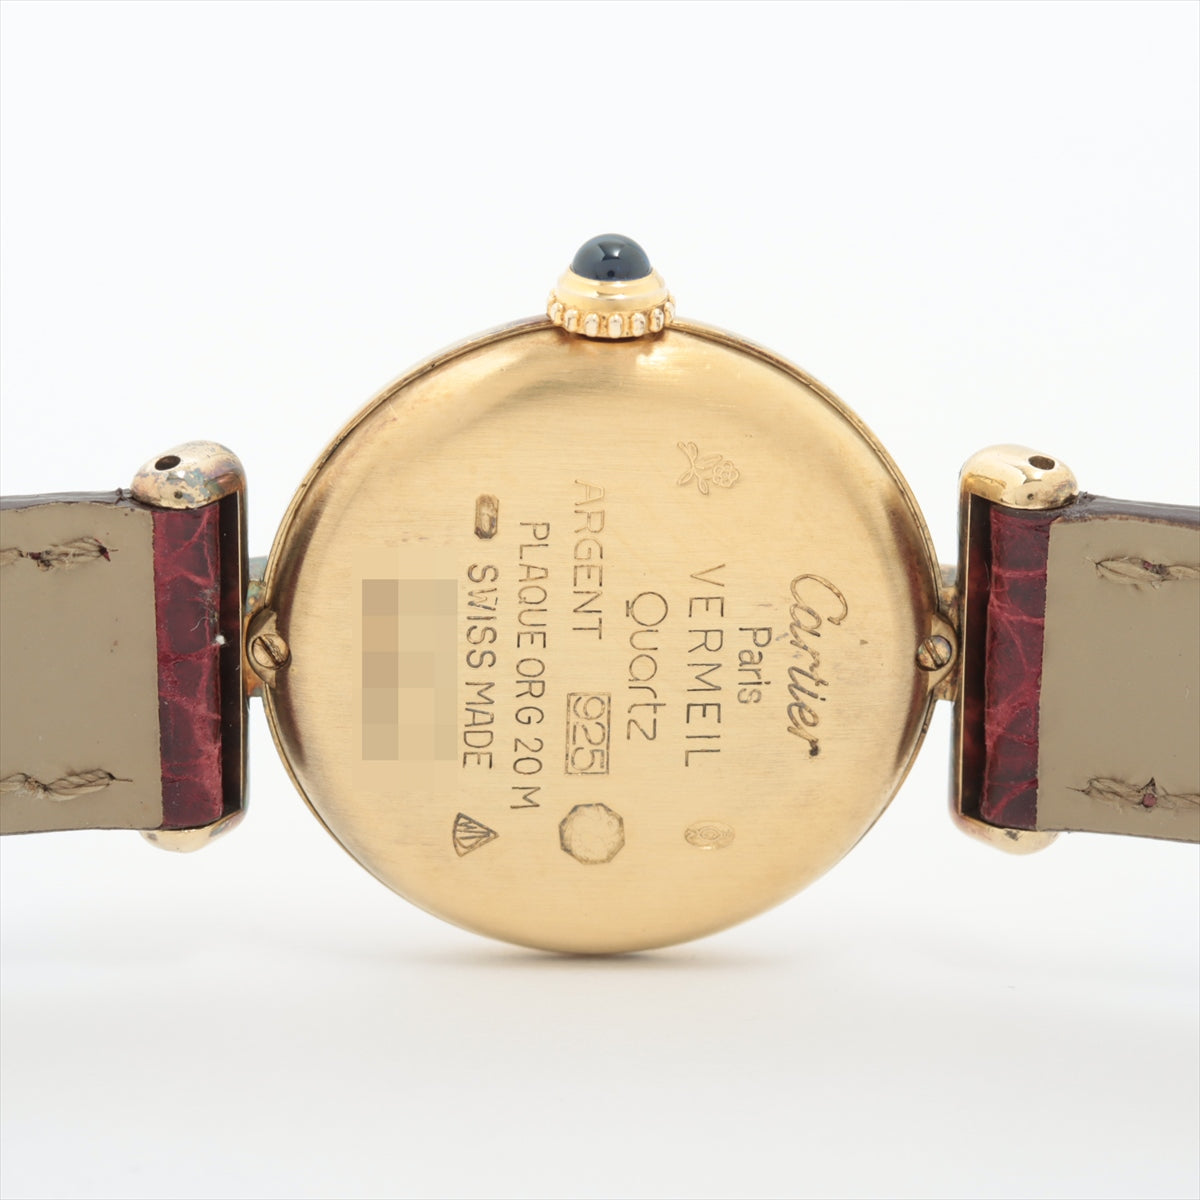 ABランク カルティエ マストコリゼヴェルメイユ 腕時計 アイボリー文字盤 CARTIER レディース ゴールド ブラック